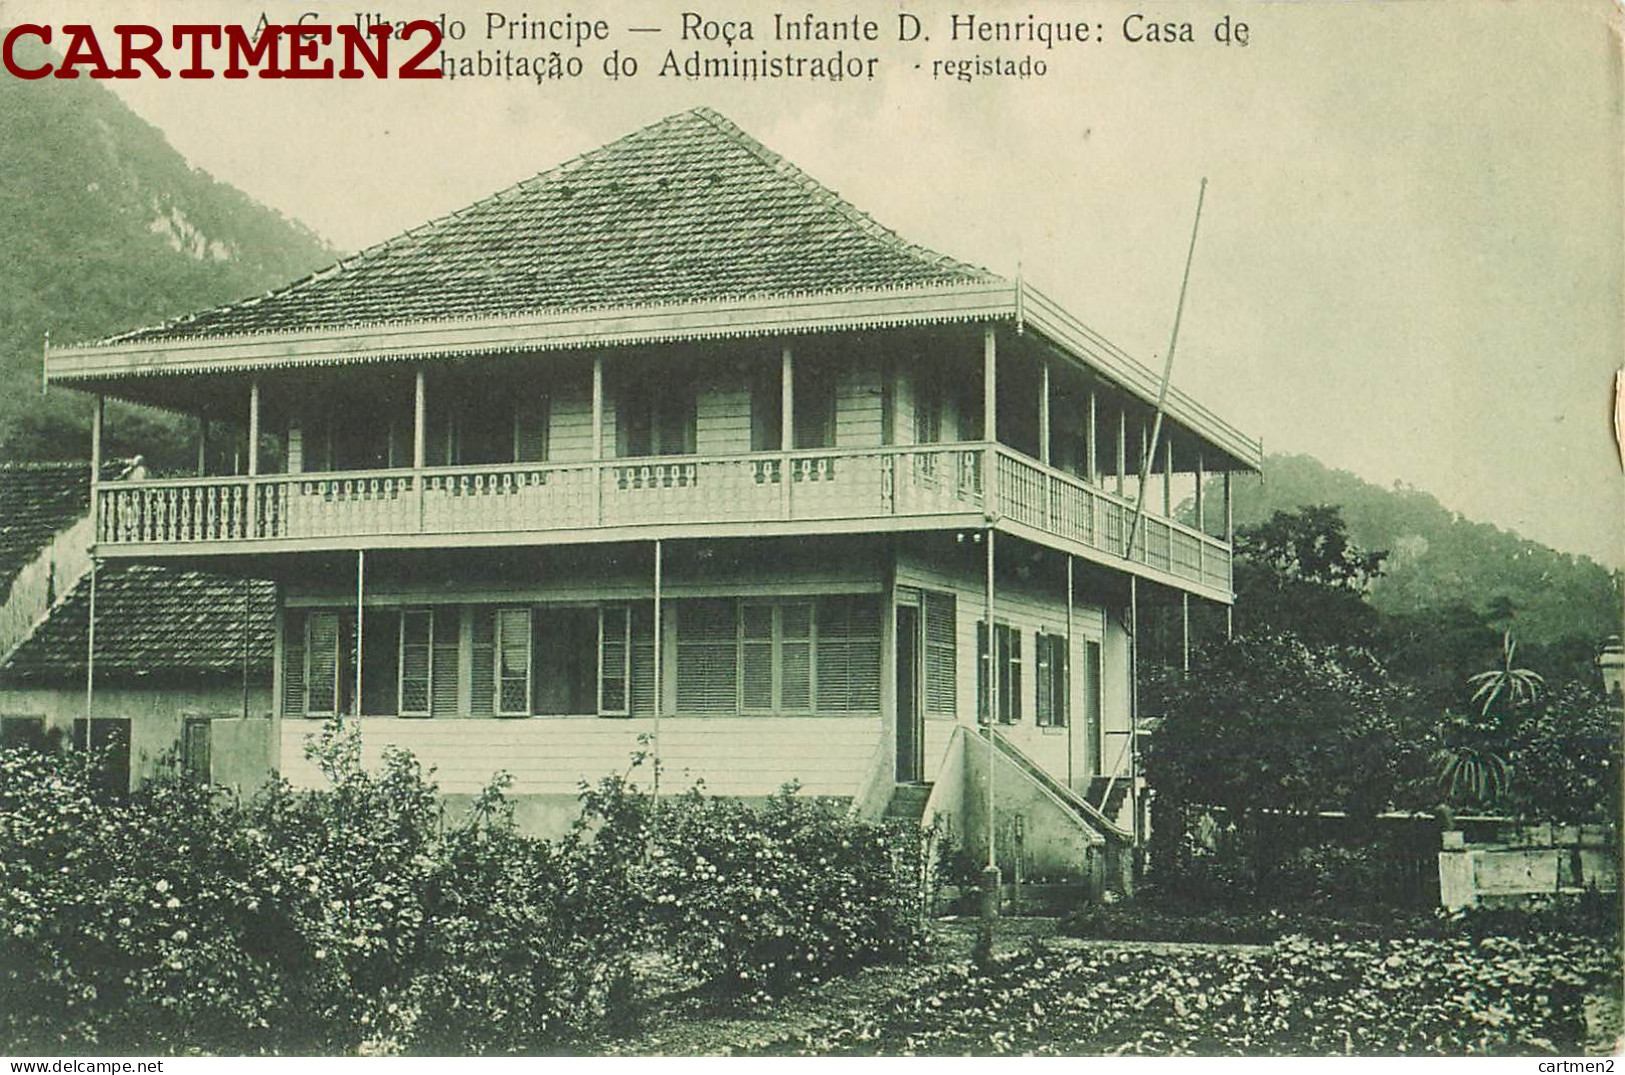 SAO TOME ILHA DO PRINCIPE ROCA INFANTE D. HENRIQUE CASA DE HABITACAO DO ADMINISTRATOR AFRICA PORTUGAL AFRIQUE - Sao Tome And Principe